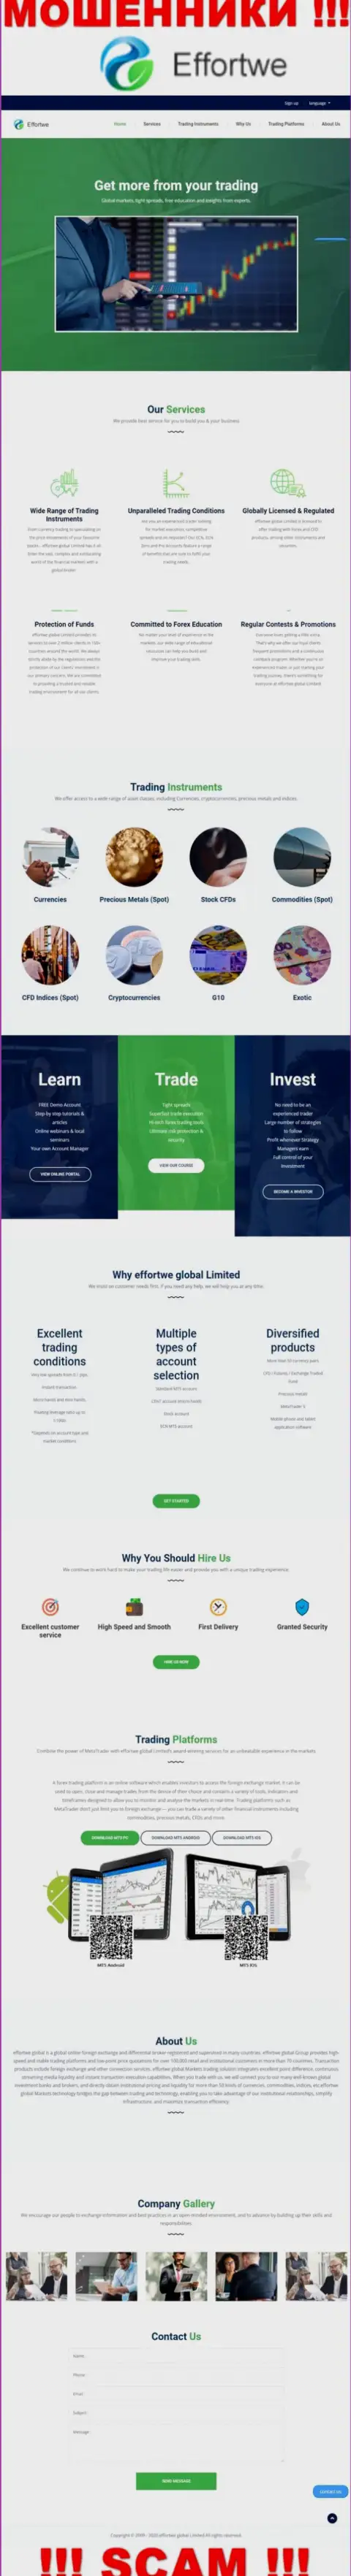 Сайт конторы Effortwe Global Limited, заполненный фейковой инфой